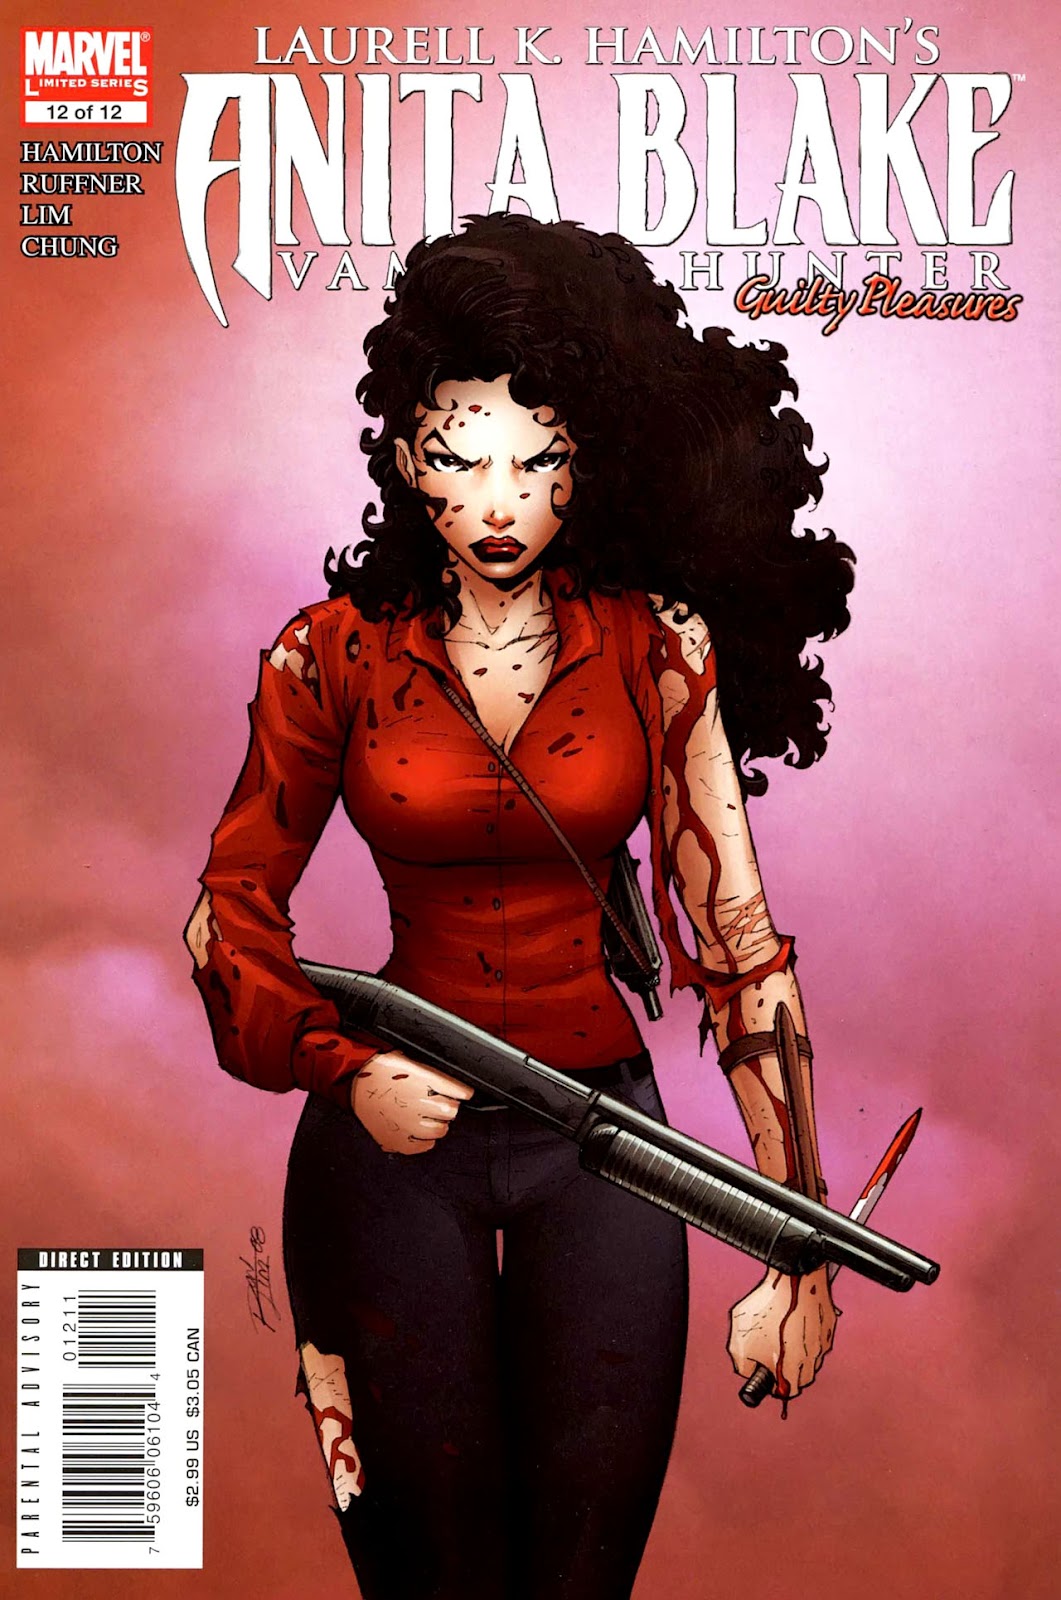 Anita Blake Viewcomic Reading Comics Online For Free 19